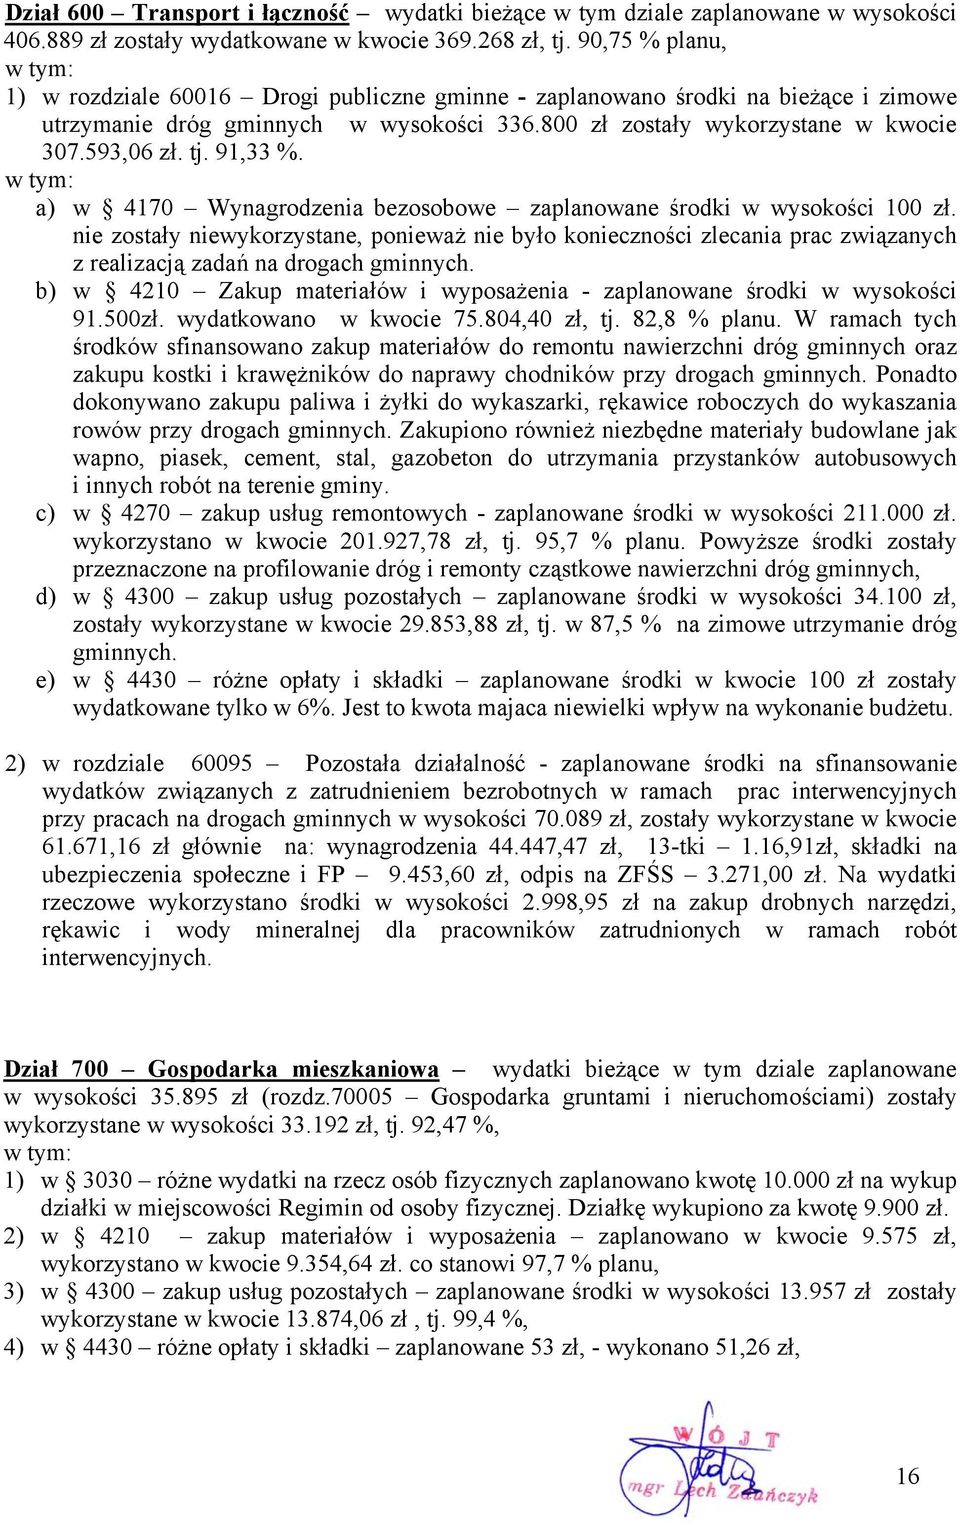 tj. 91,33. w tym: a) w 4170 Wynagrodzenia bezosobowe zaplanowane środki w wysokości 100 zł.